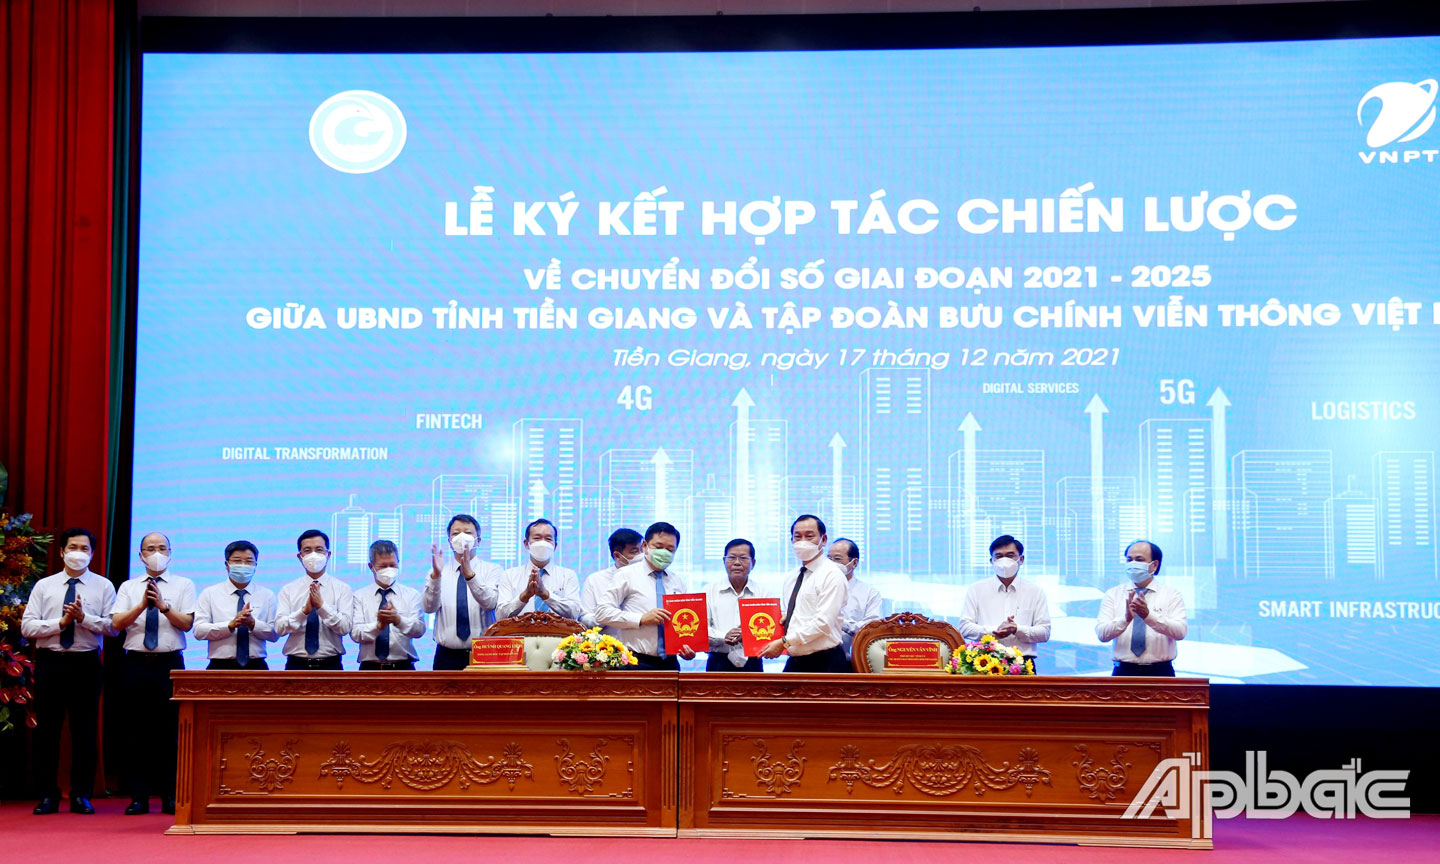 UBND tỉnh Tiền Giang và Tập đoàn VNPT ký kết thỏa thuận hợp tác chiến lược về chuyển đổi số tỉnh Tiền Giang giai đoạn 2021 - 2025.      	              Ảnh: SỬU MINH